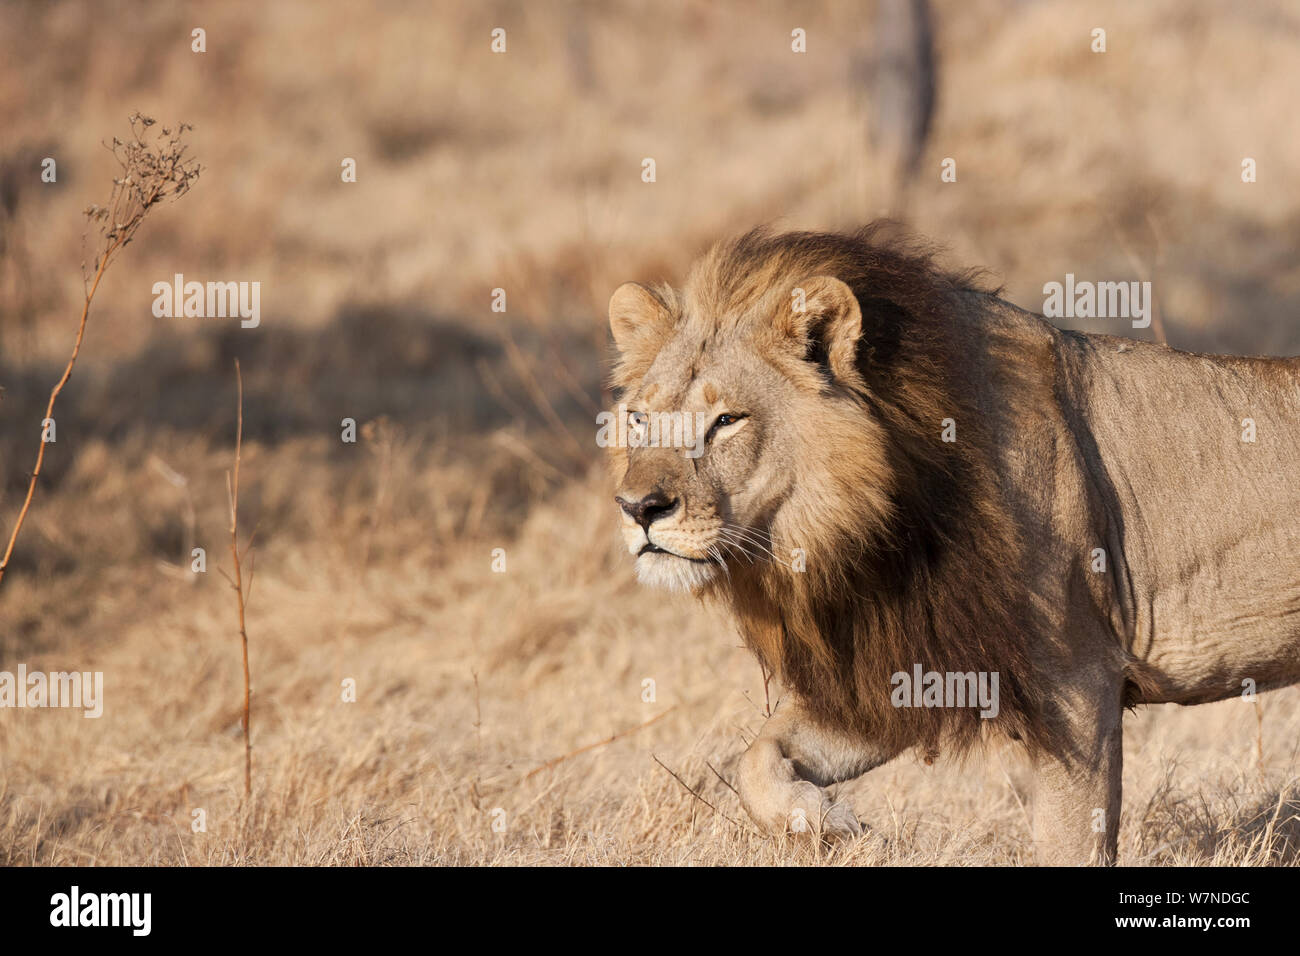 Lionne unique (Panthera leo) femelle avec une crinière ressemblant à celle d'un lion mâle chasse, Mombo, Moremi, chef de l'Île, Okavango Delta, Botswana. Banque D'Images